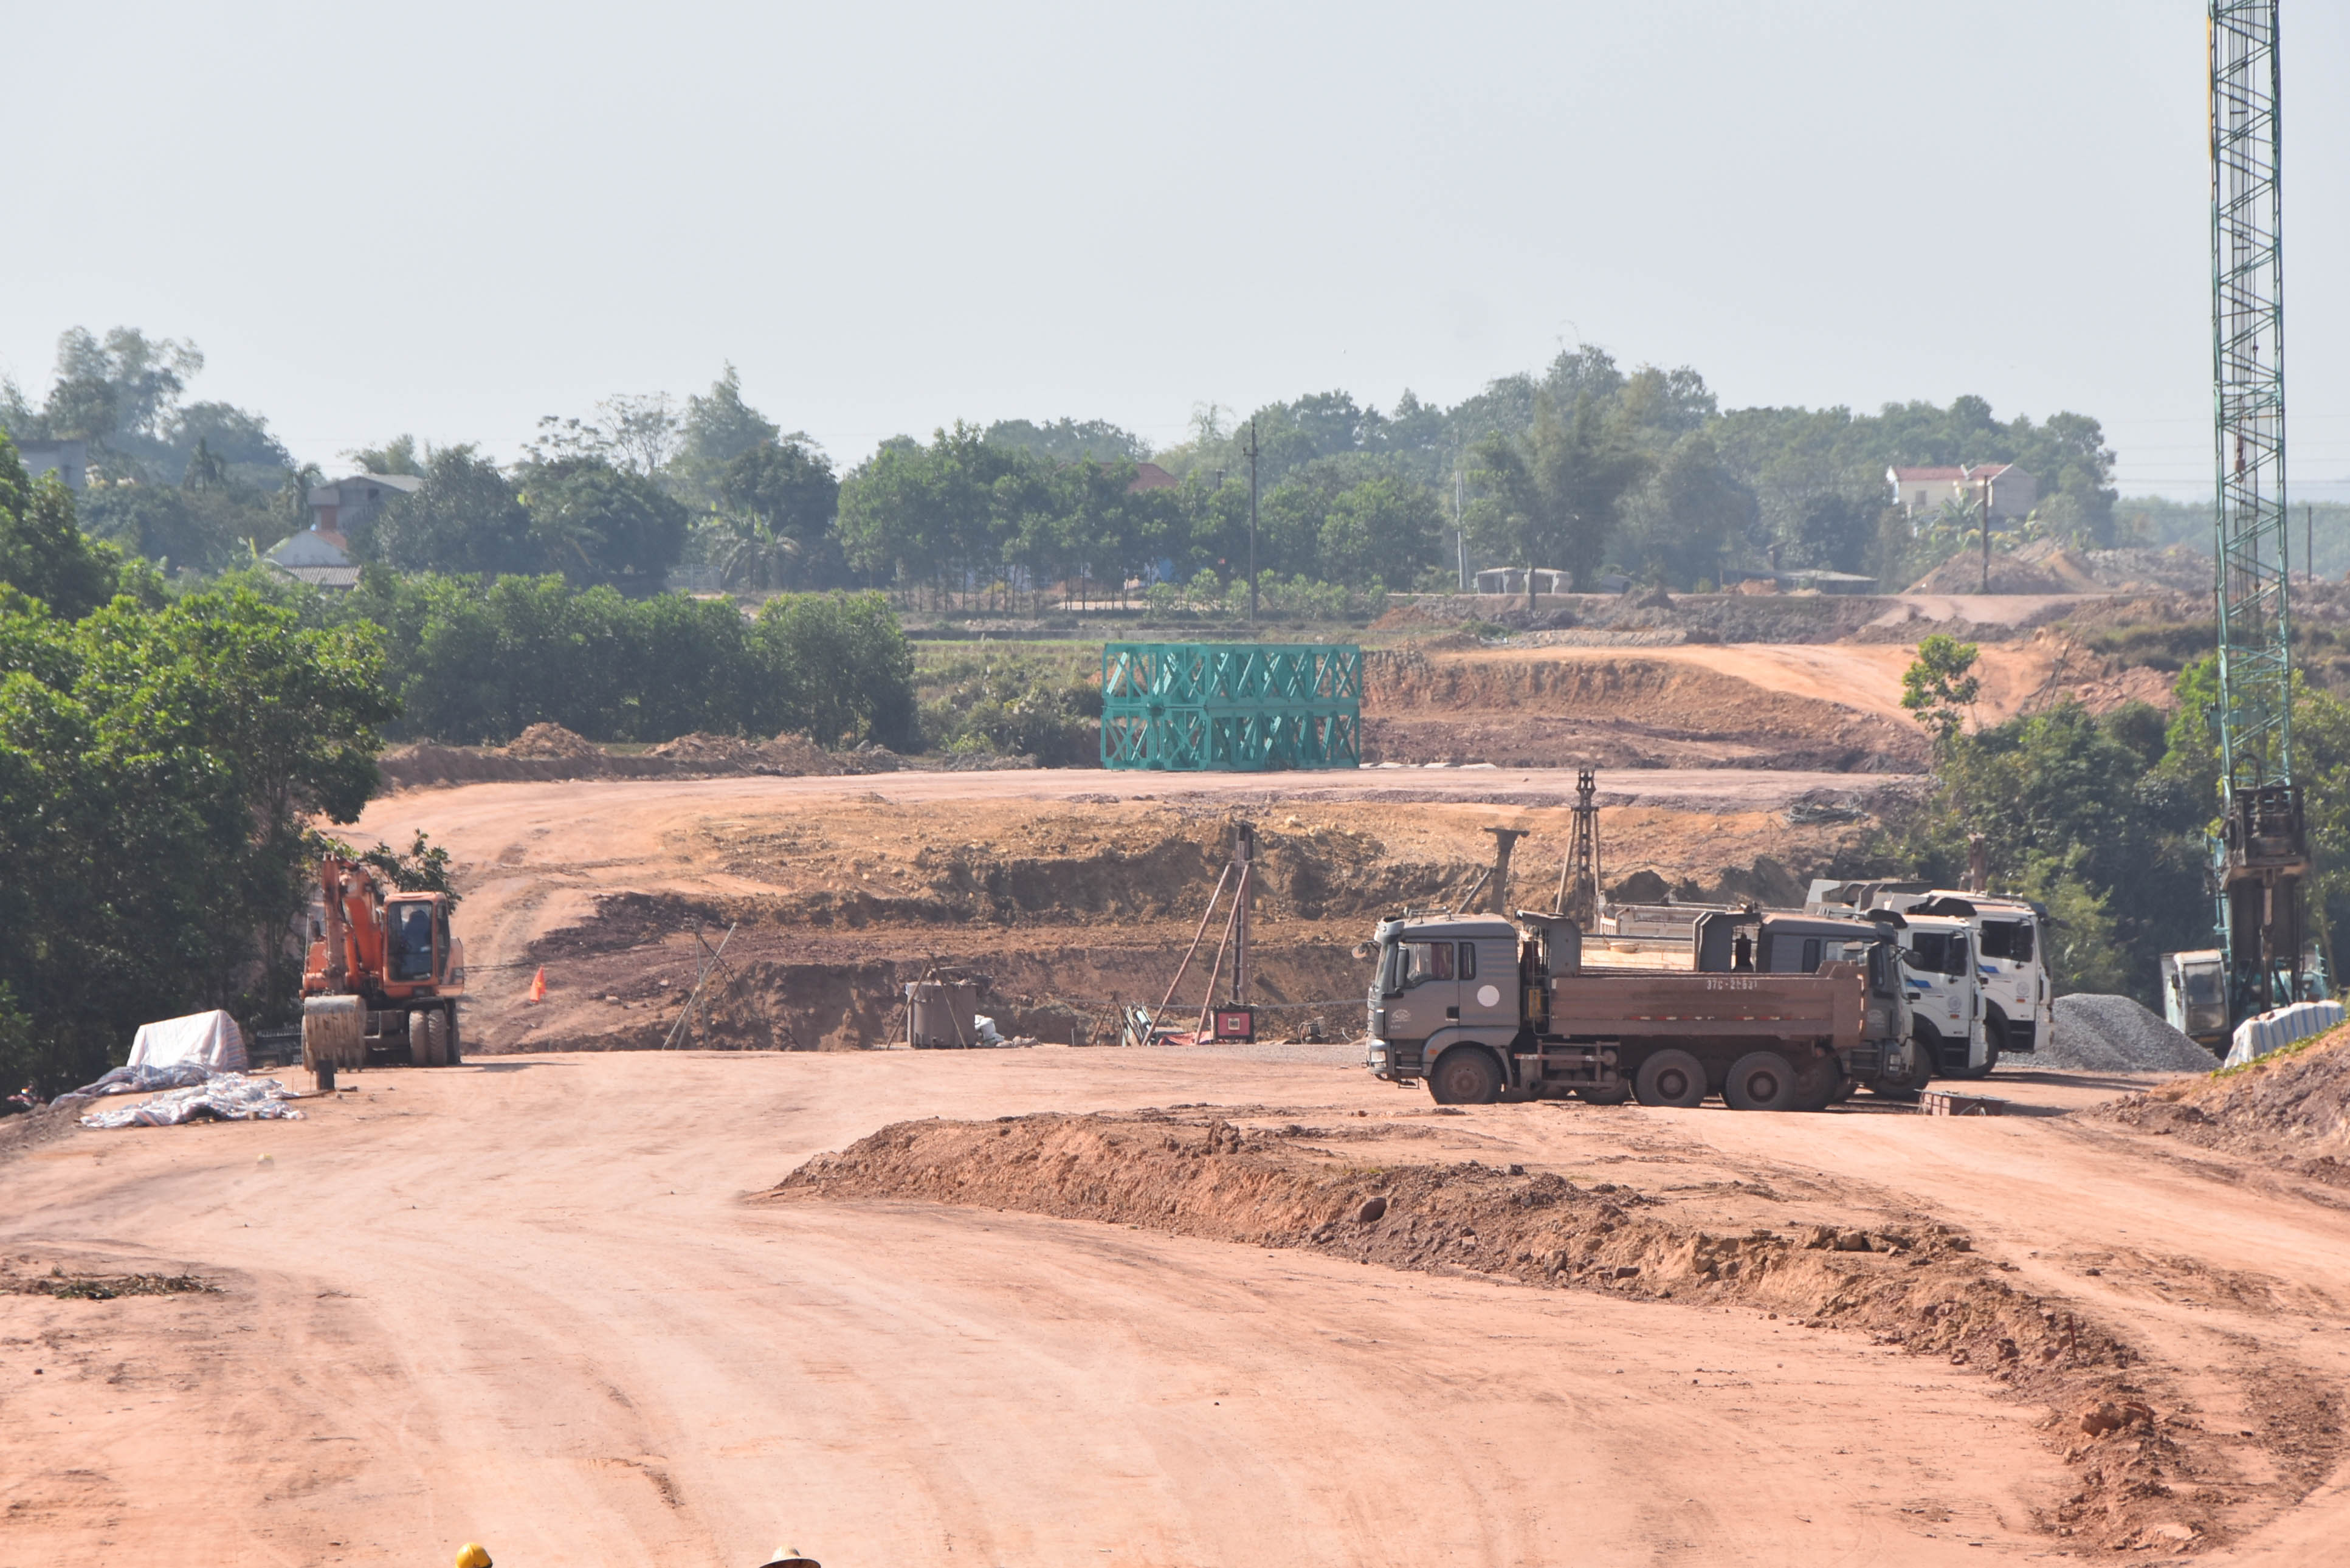 Quang cảnh thi công tuyến đường cao tốc Vân Đồn - Móng Cái sau điều chỉnh đoạn qua địa bàn huyện Đầm Hà.